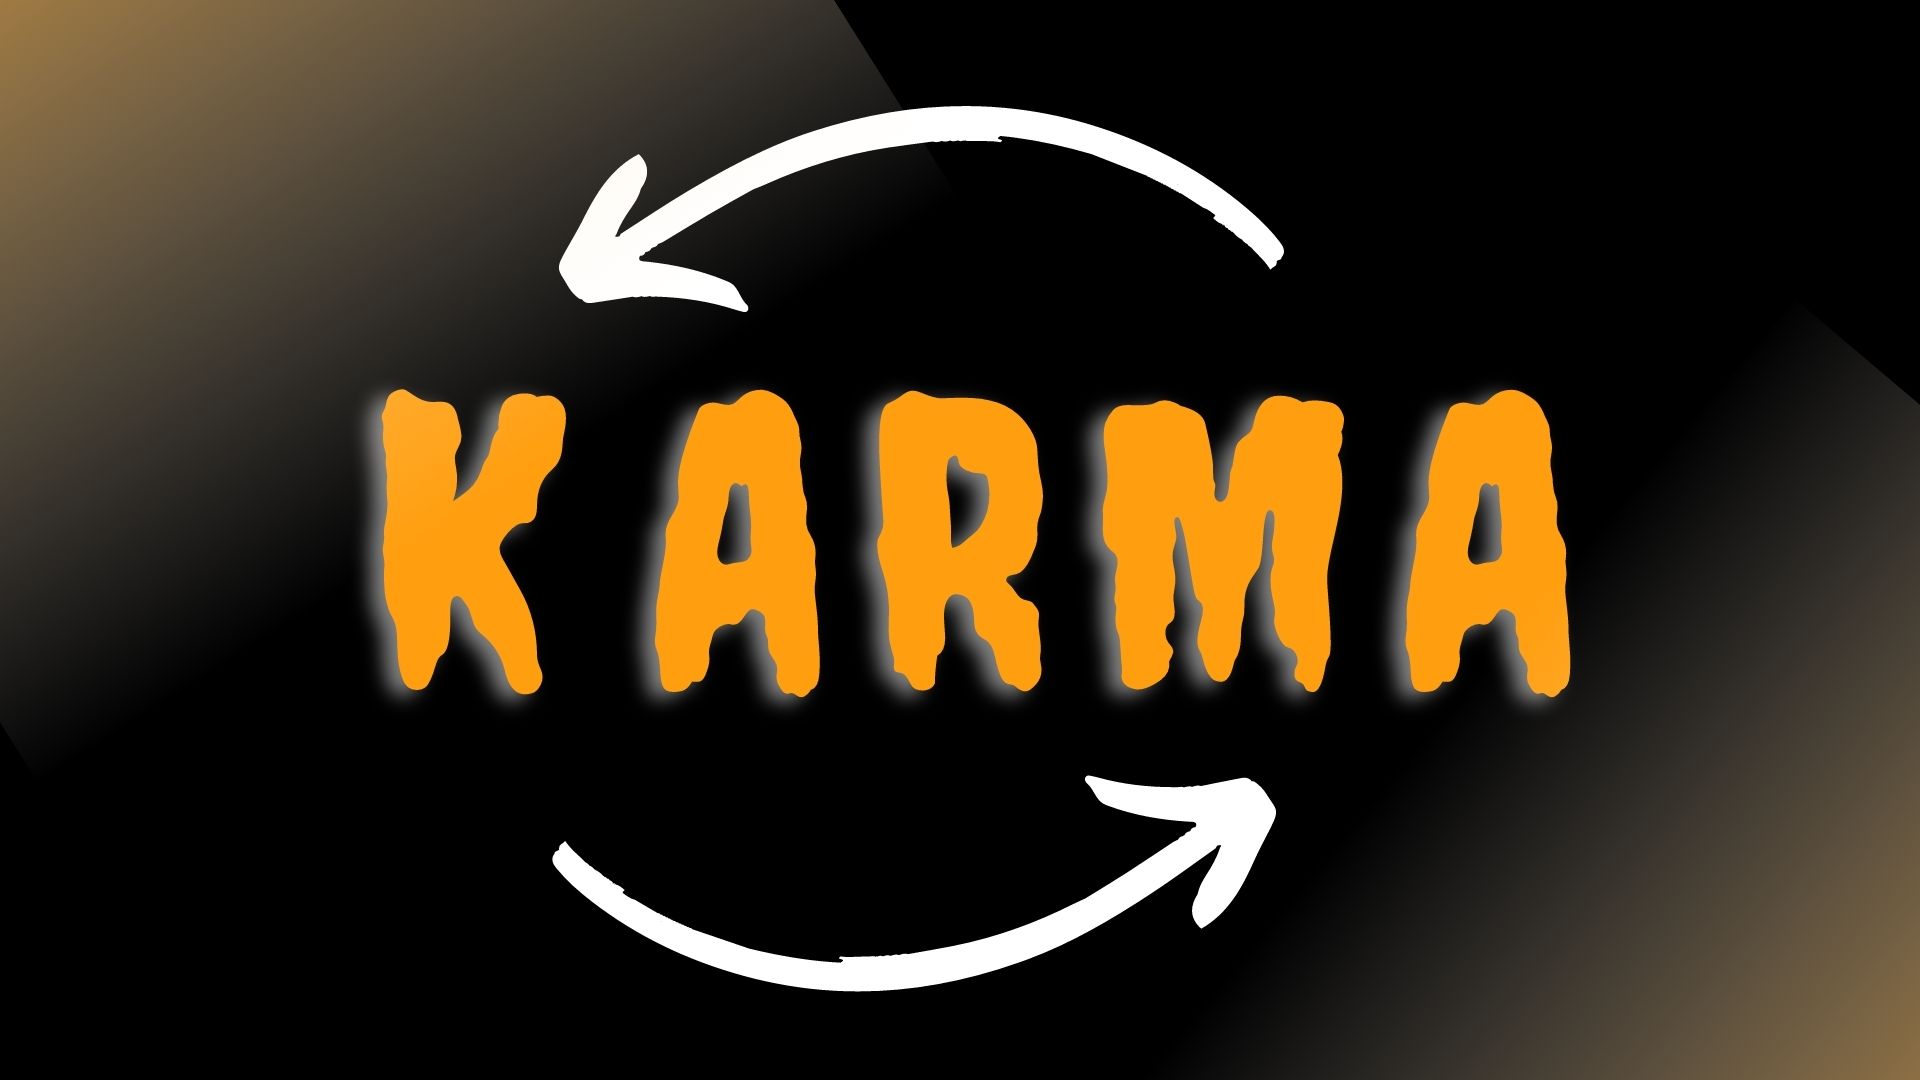 Karma returns back. karma hits you back